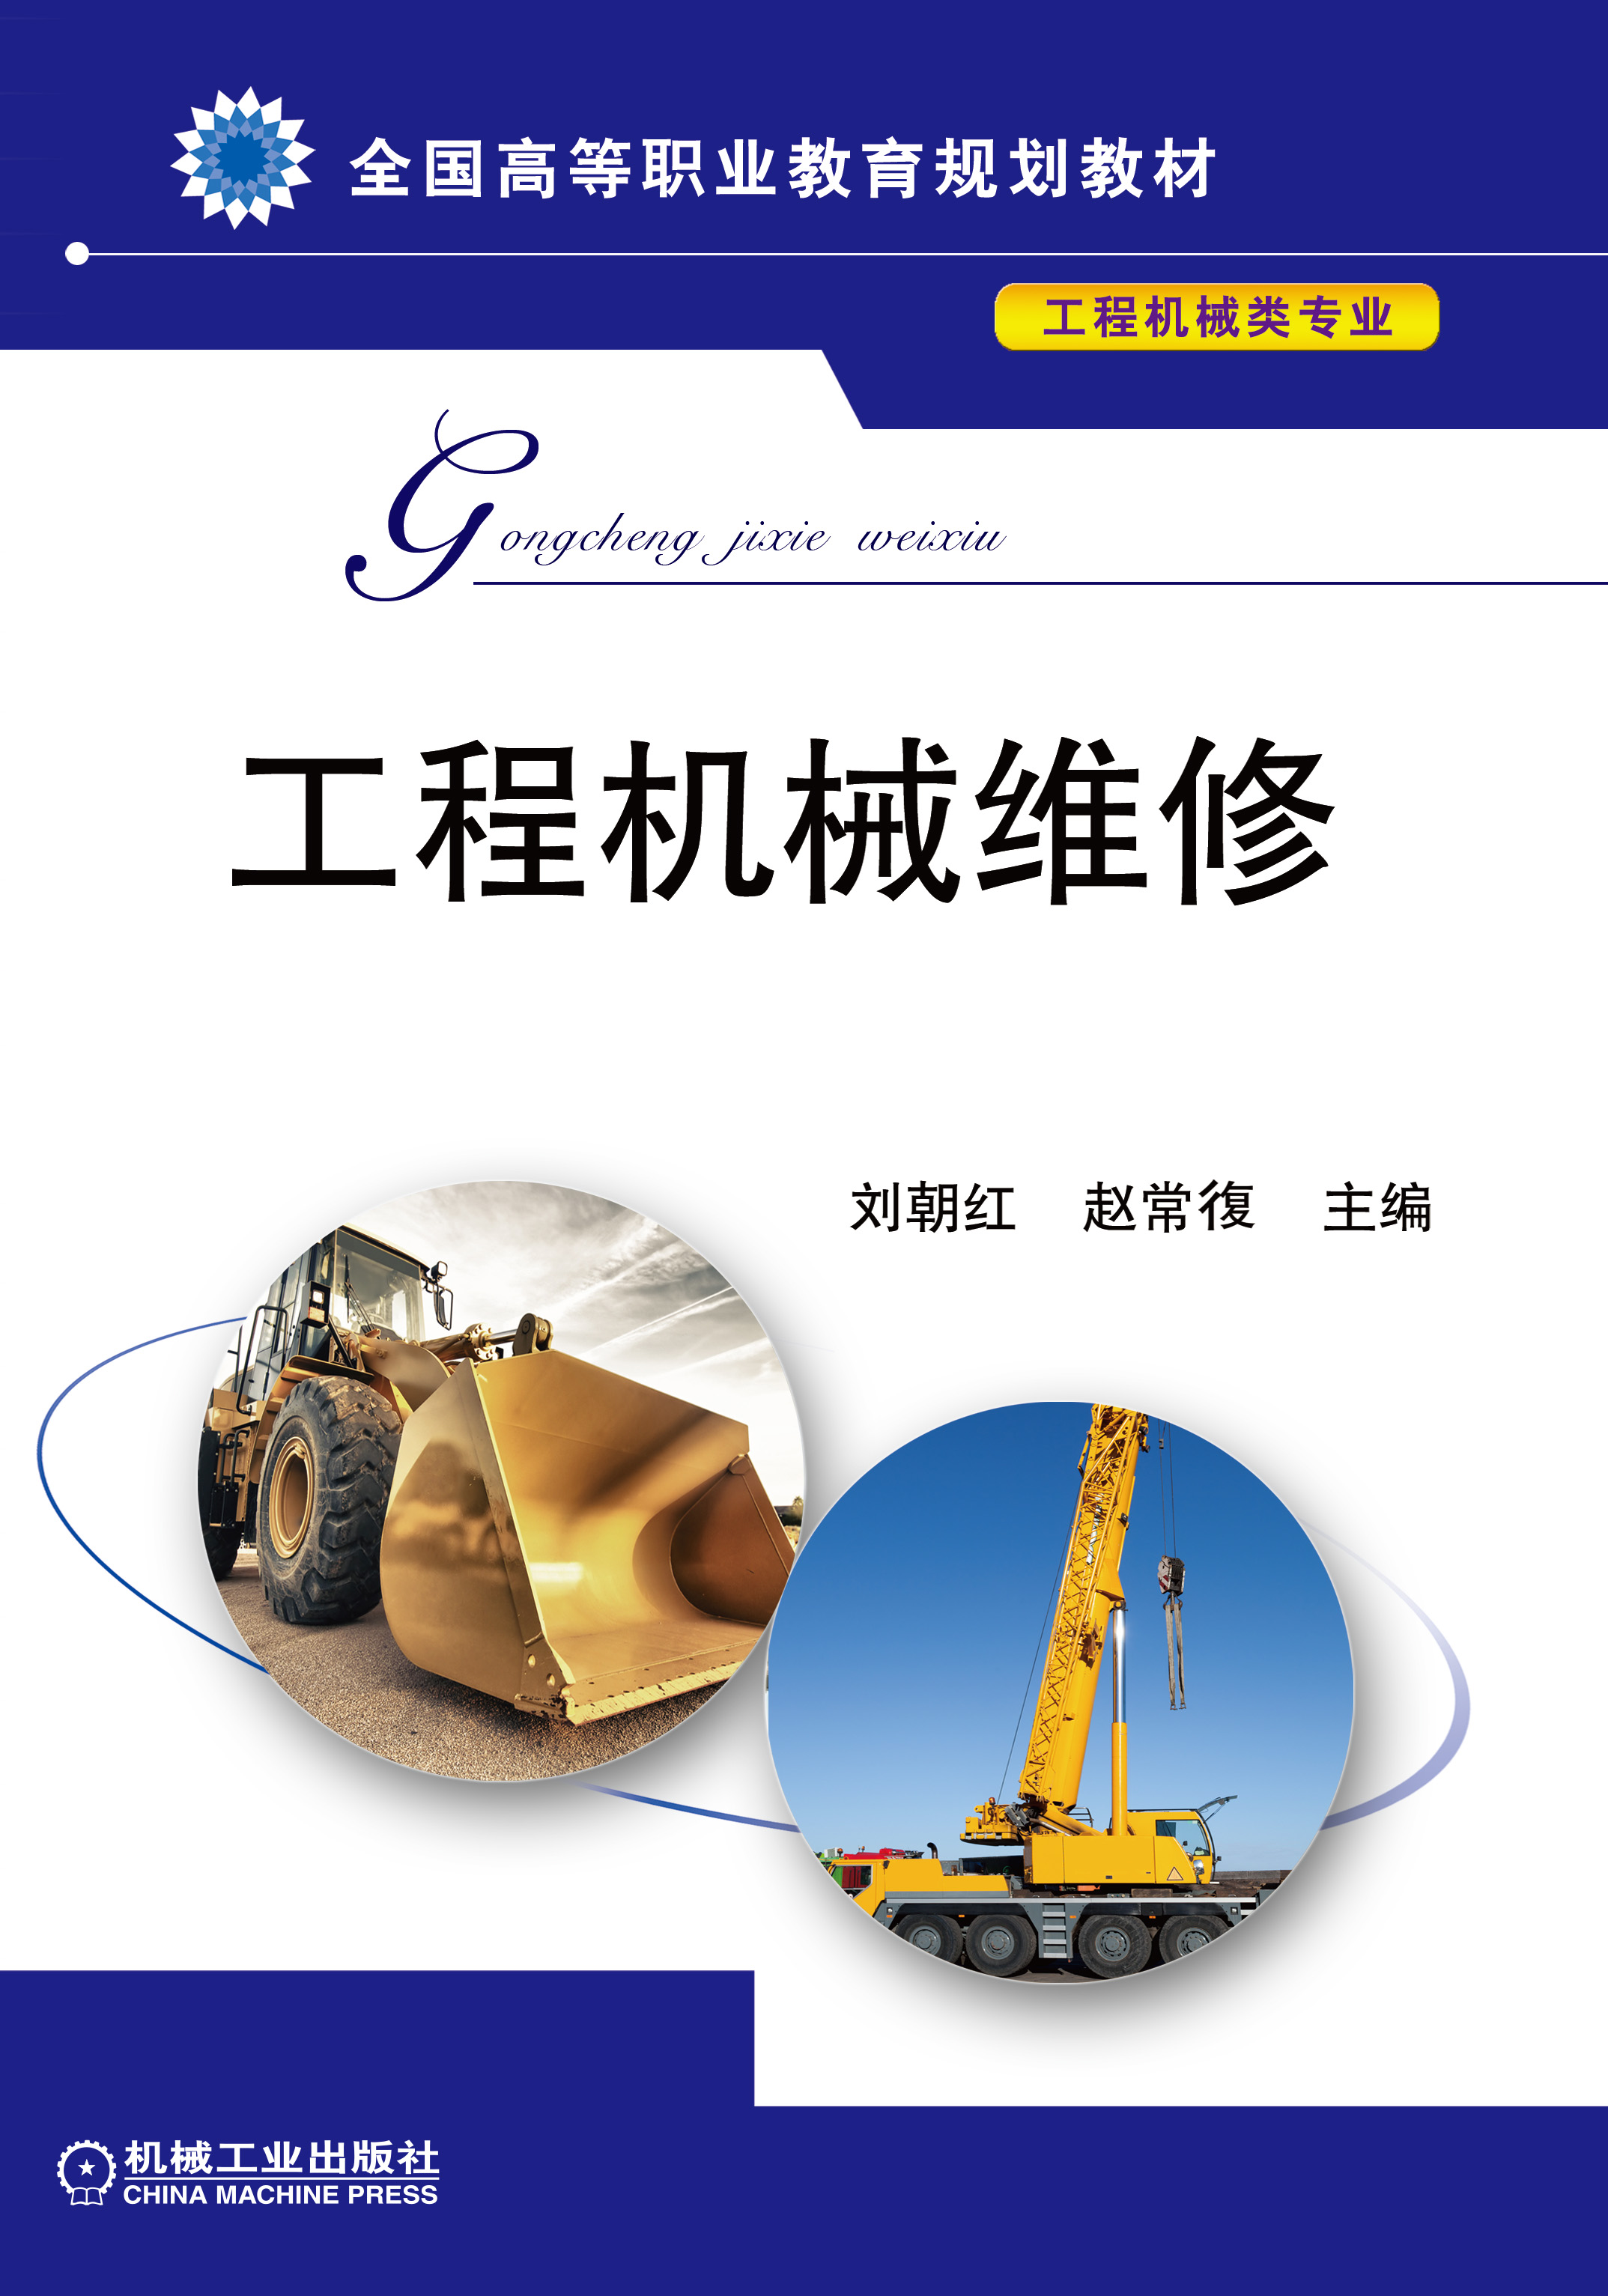 工程機械維修(2017年機械工業出版社出版作者劉朝紅)